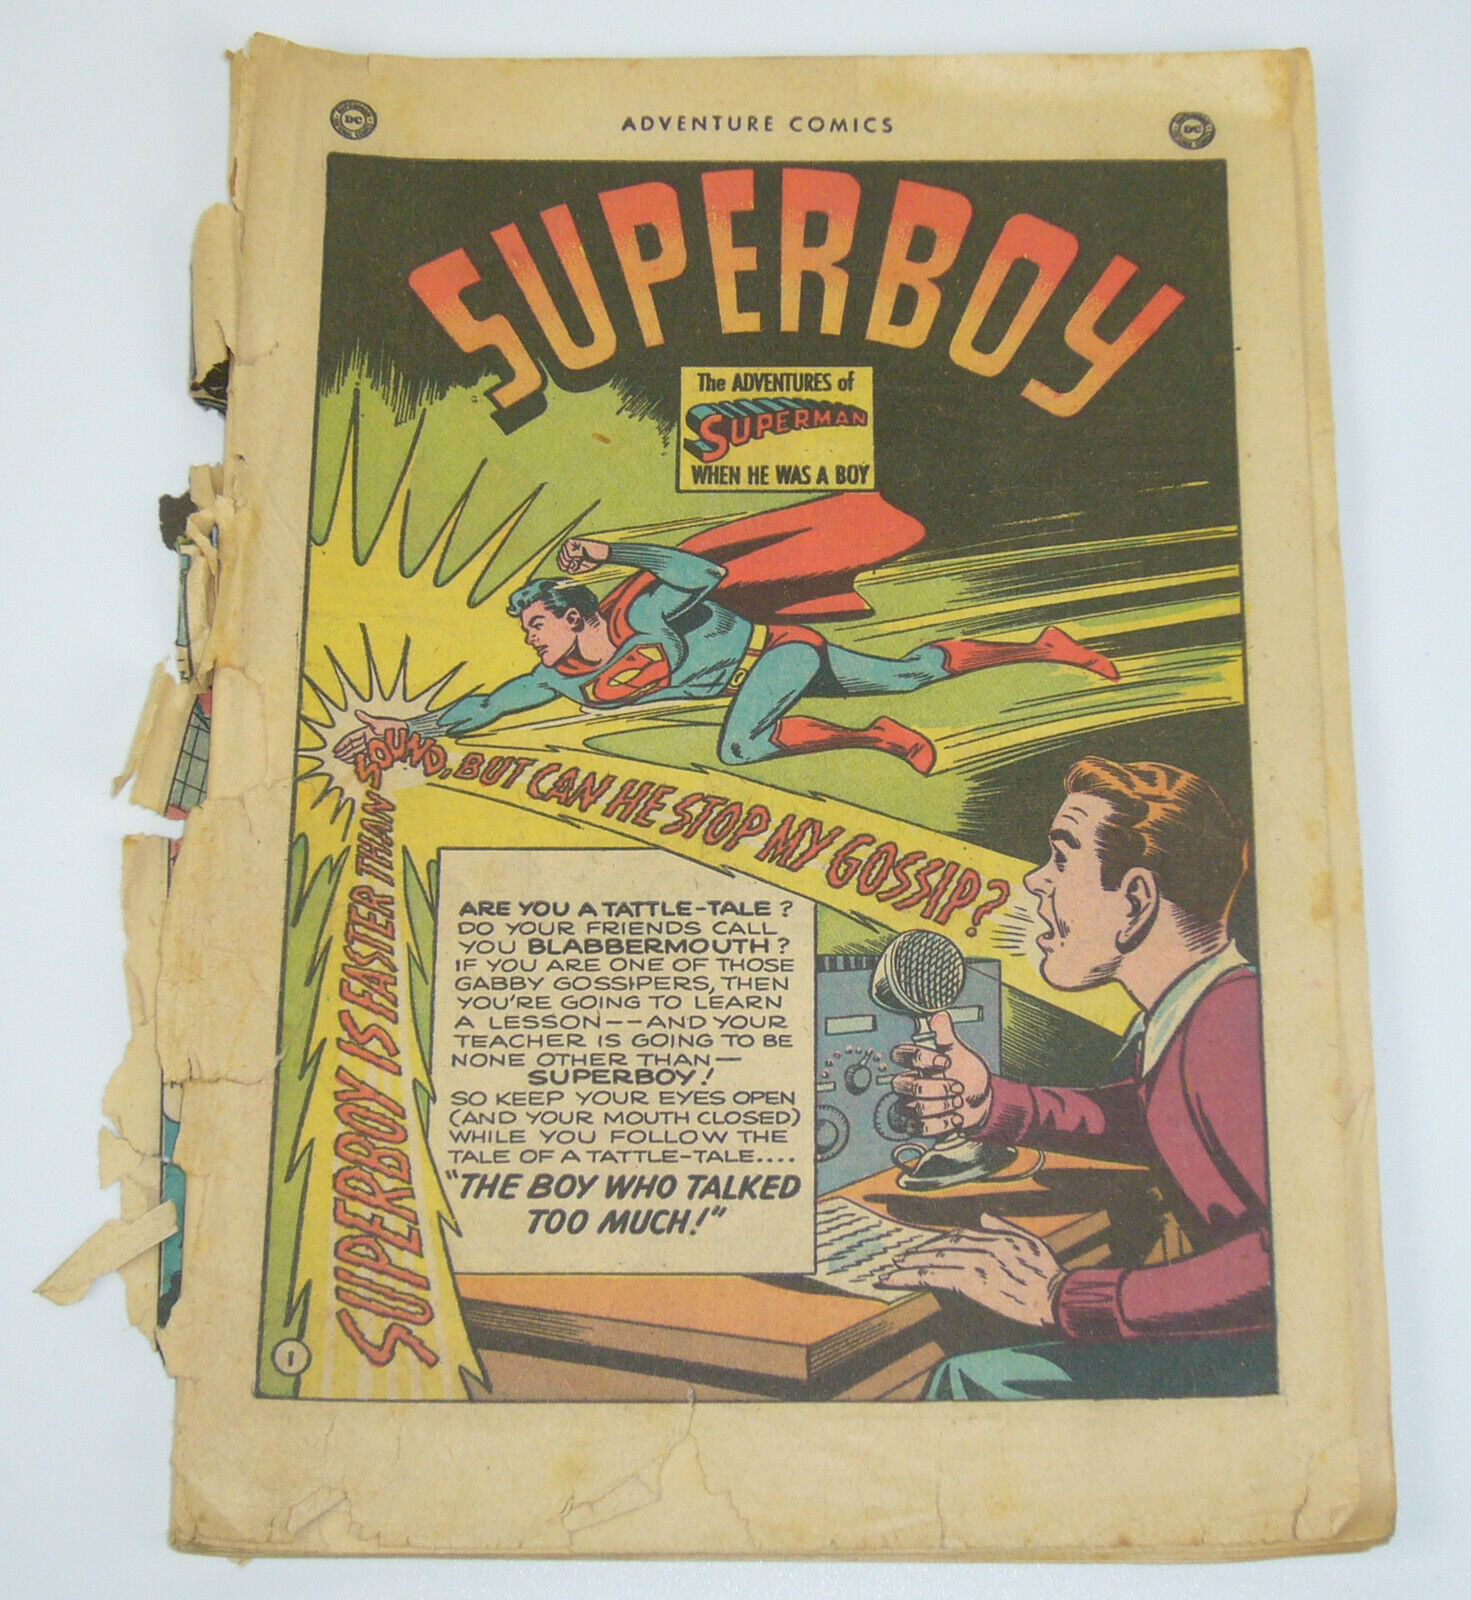 Adventure Comics #151 april 1950 - superboy - golden age dc comics